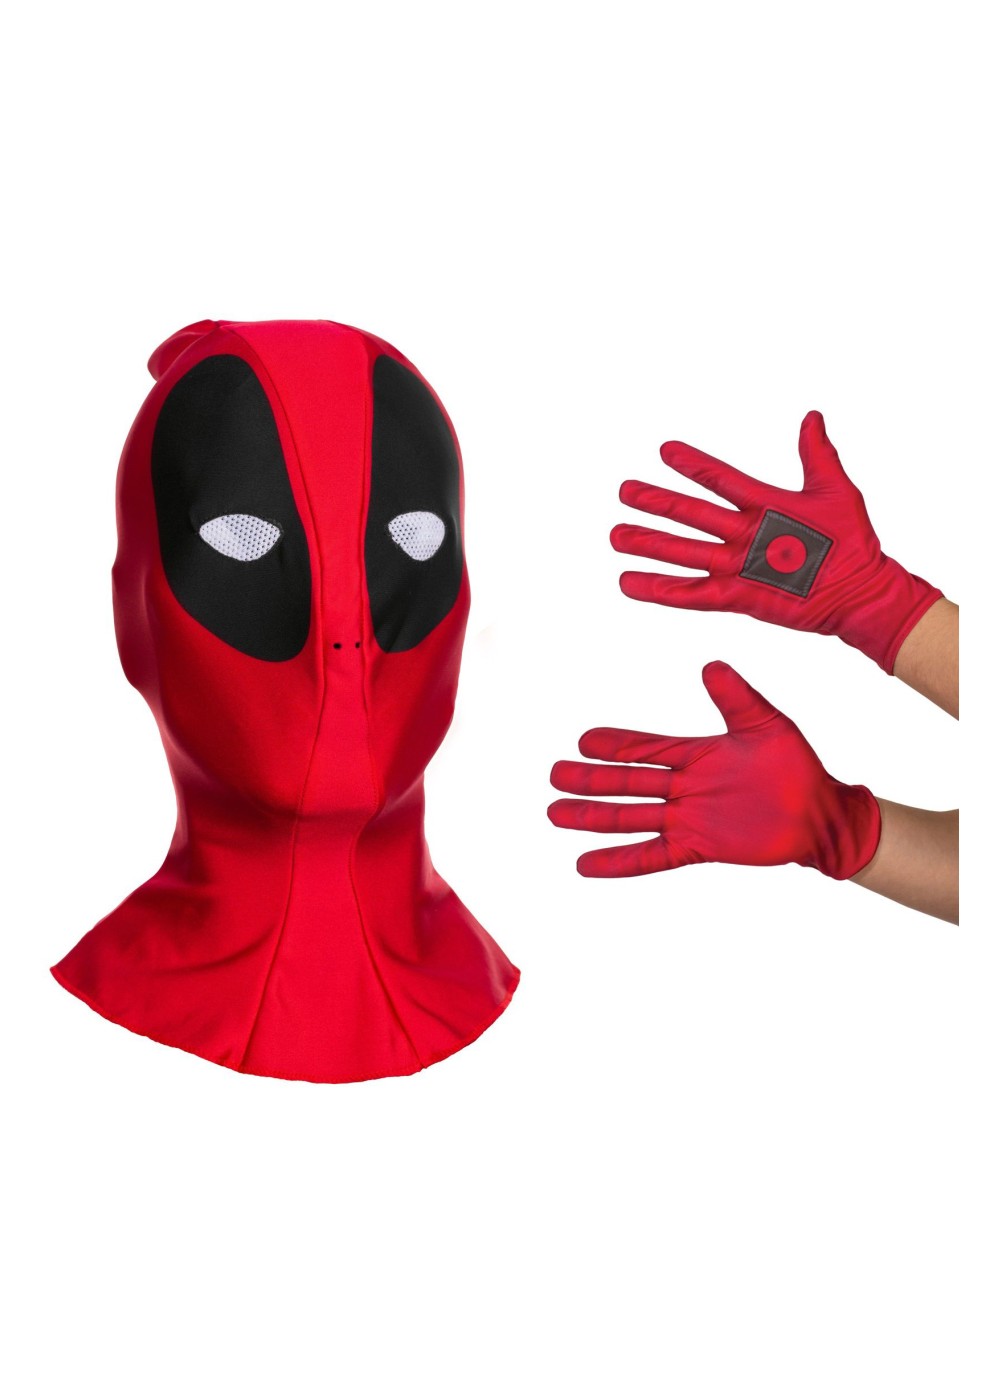  Deadpool Costume Kit